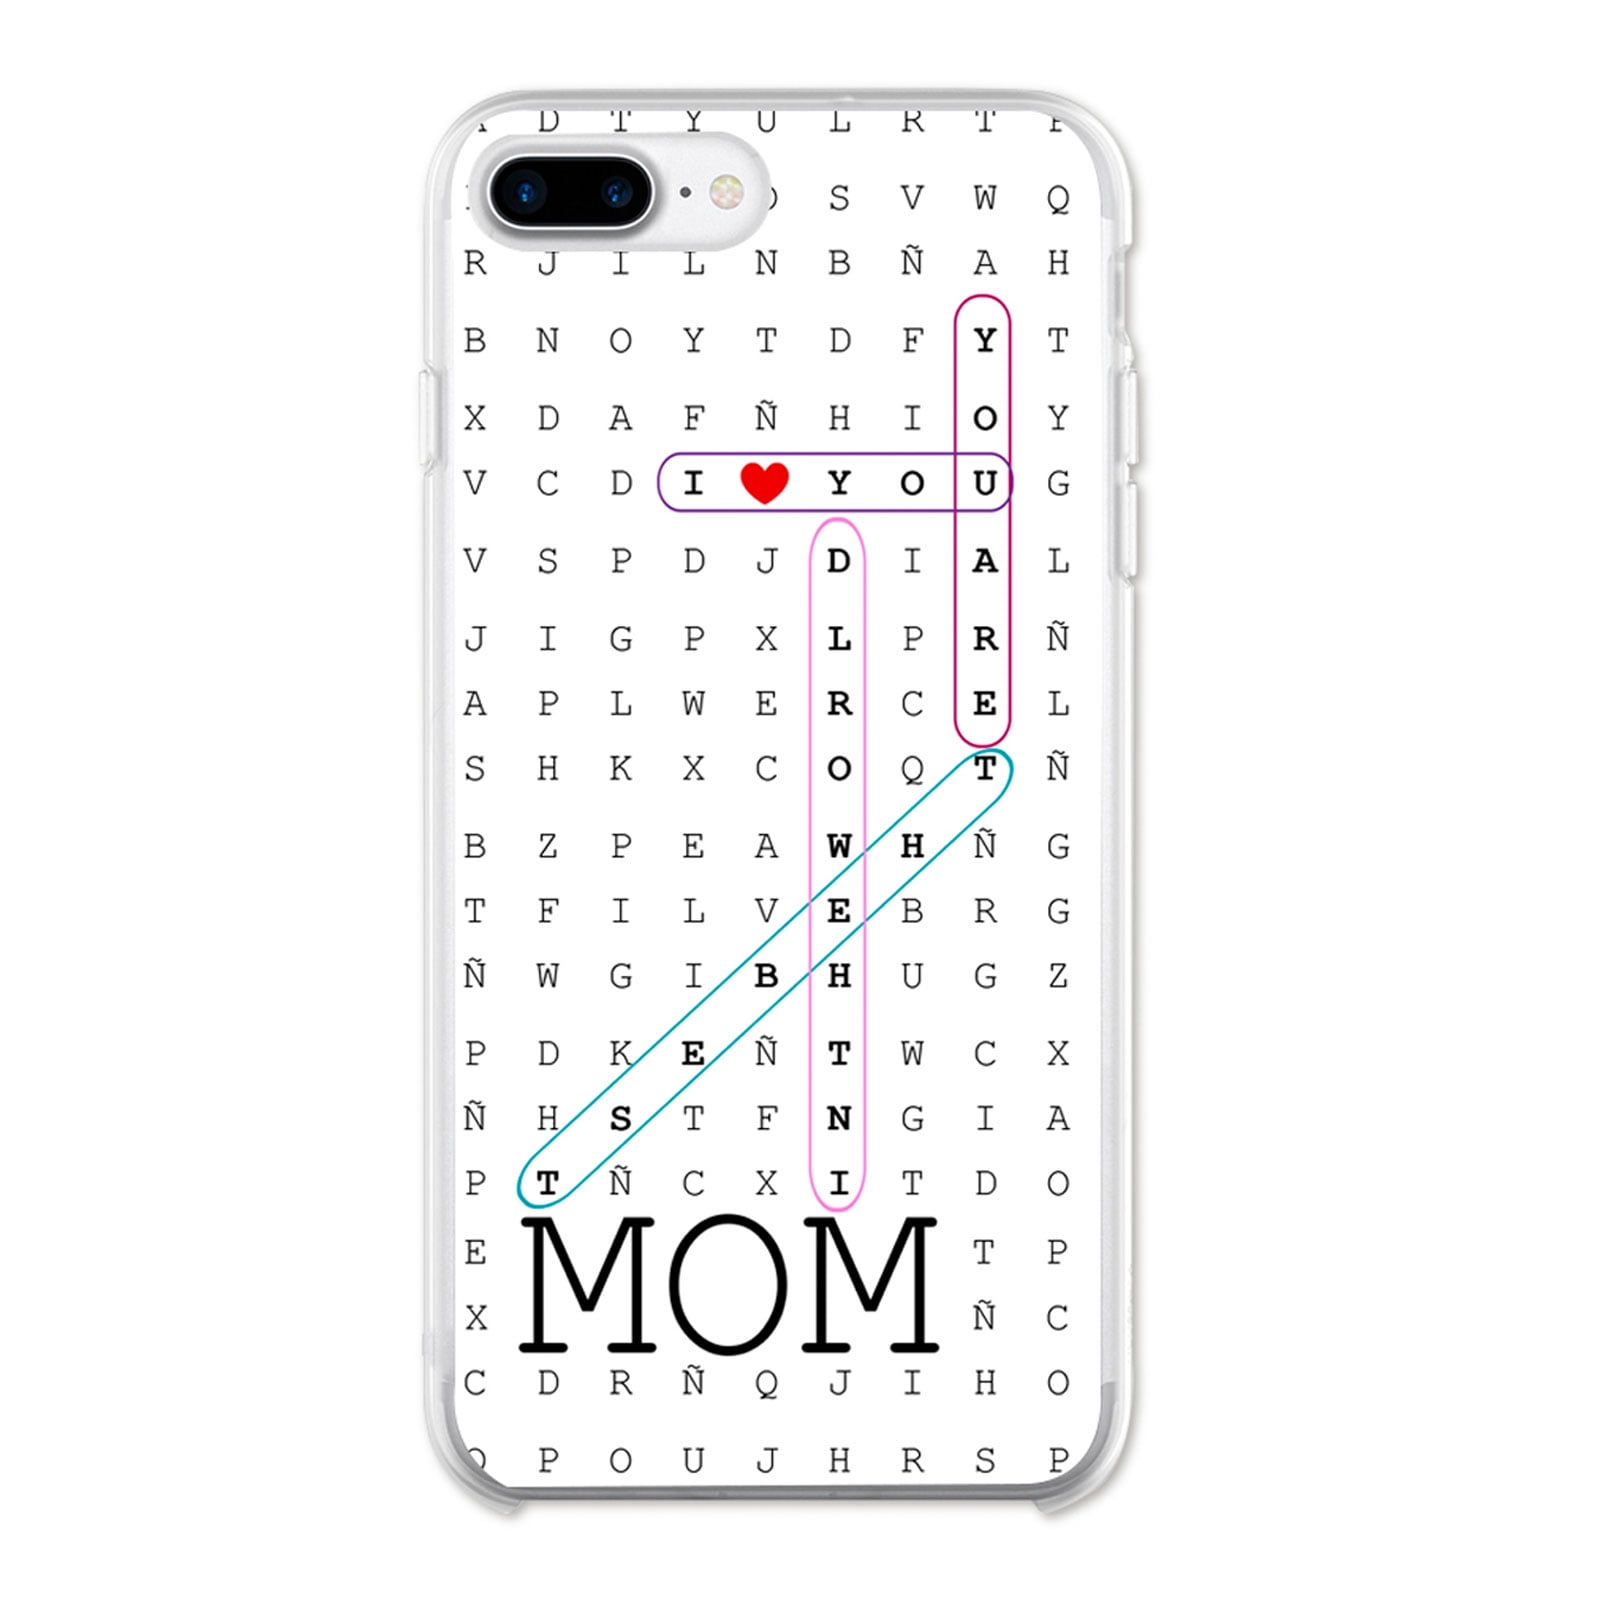 Ish Original Official Love You Mom Phone Case Cover Slim Soft Tpu For Apple Iphone X Walmart Com Walmart Com